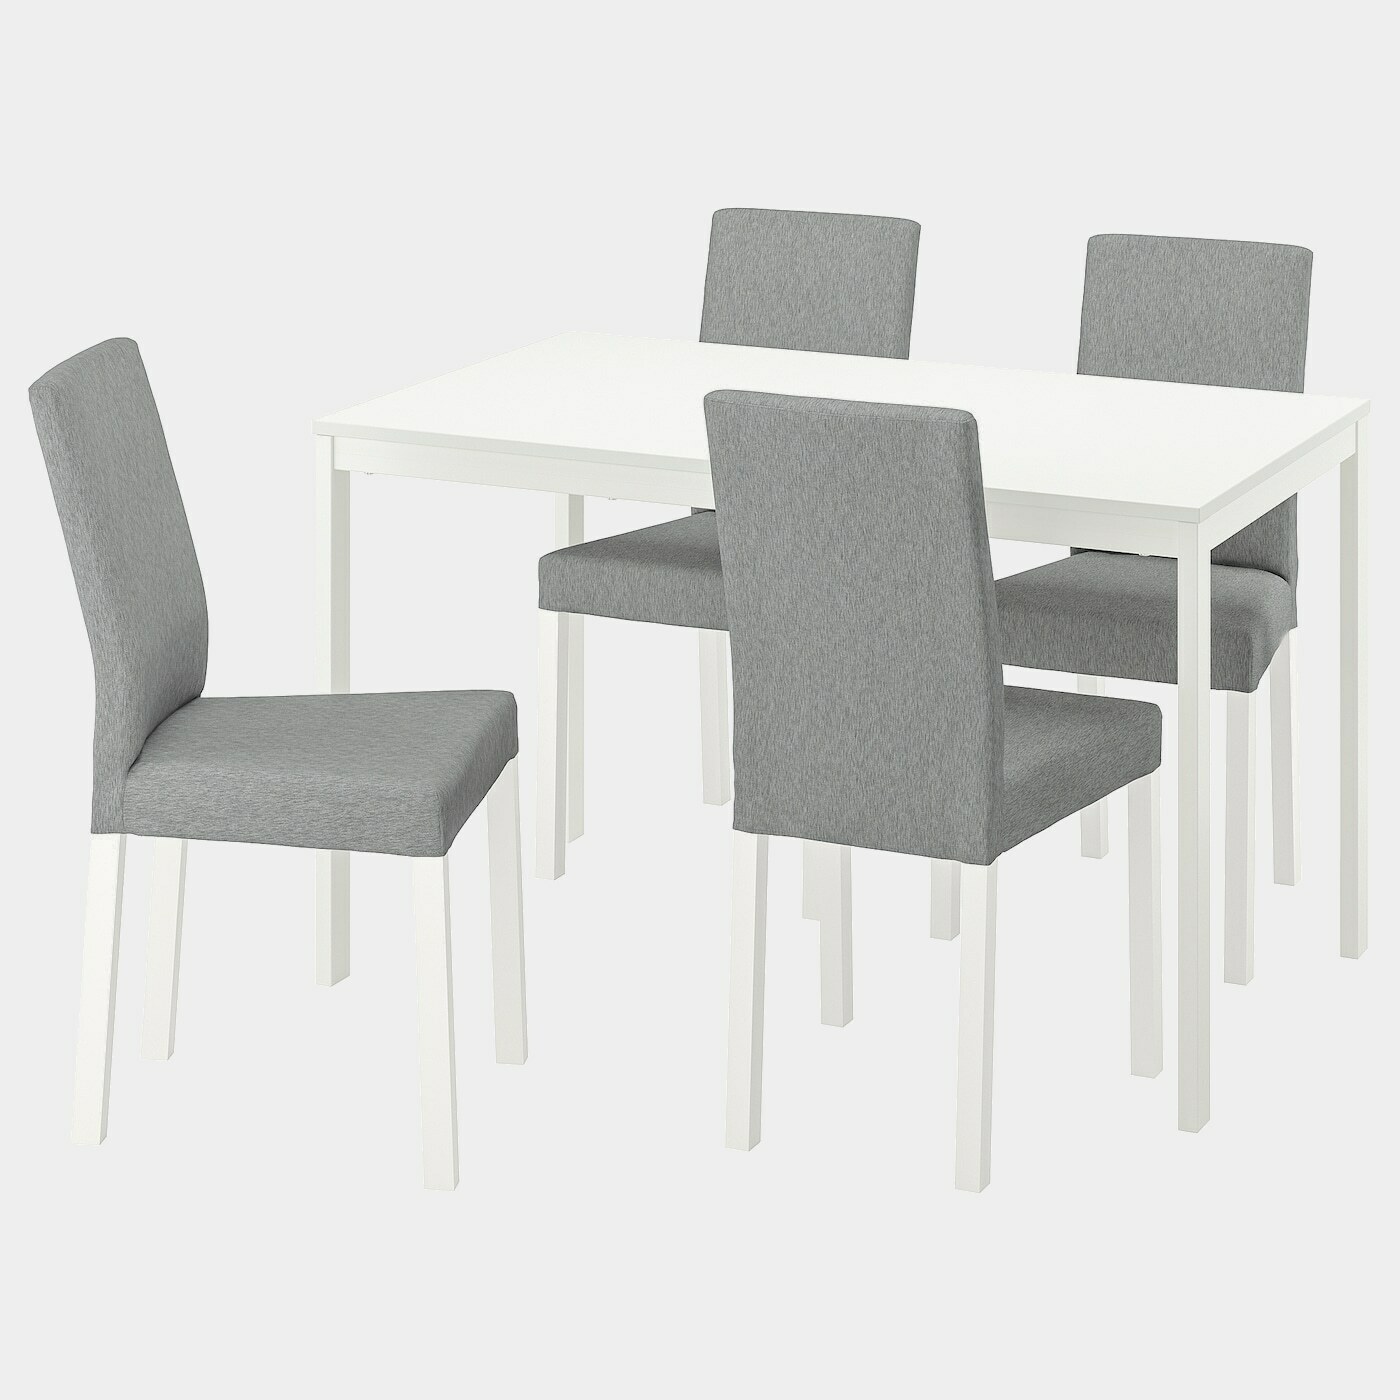 VANGSTA / KÄTTIL Tisch und 4 Stühle  -  - Möbel Ideen für dein Zuhause von Home Trends. Möbel Trends von Social Media Influencer für dein Skandi Zuhause.